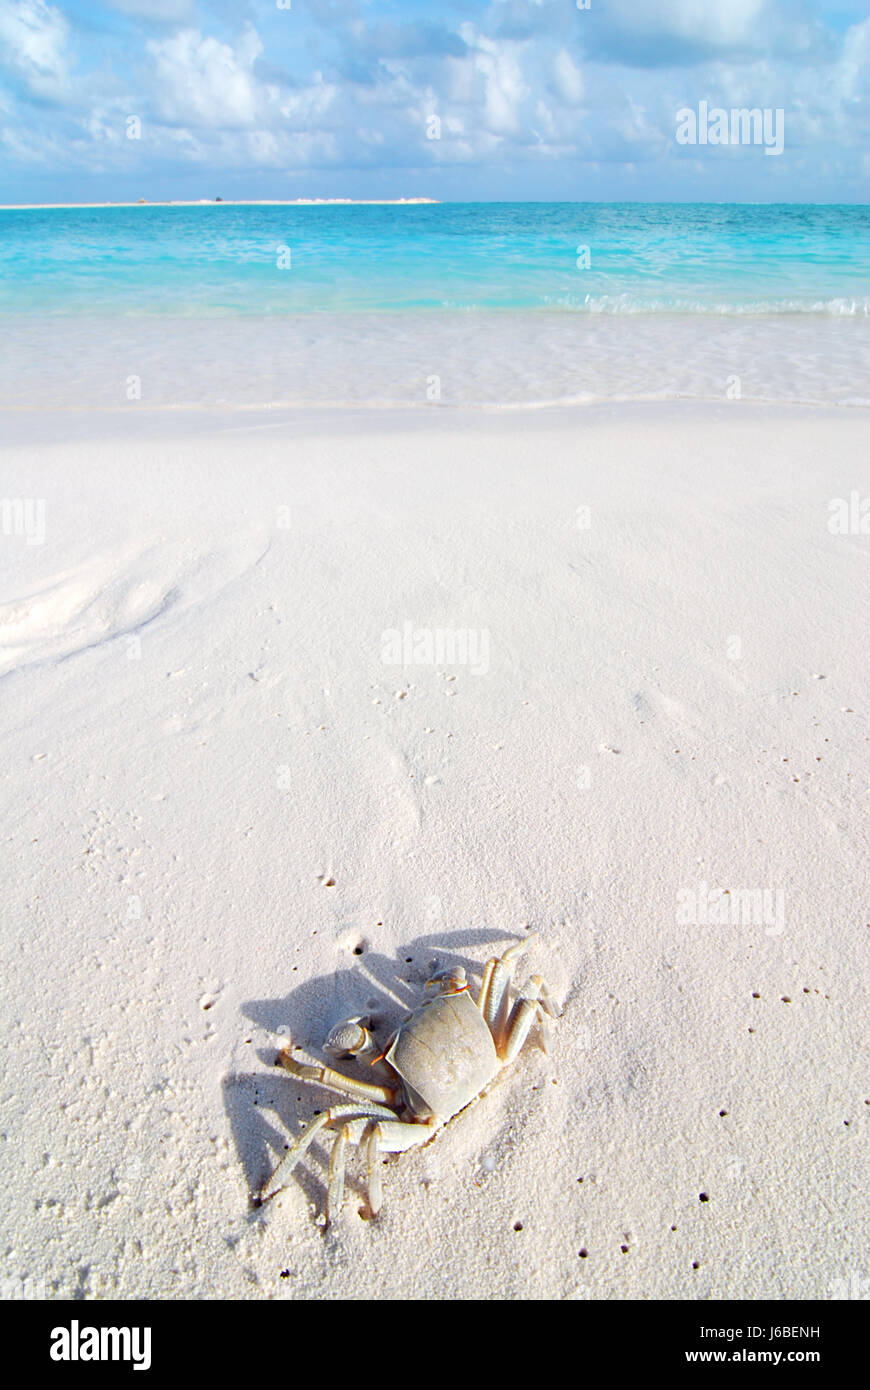 Bord de plage la plage mer eau salée crabe maldives mer océan eau jambes Banque D'Images